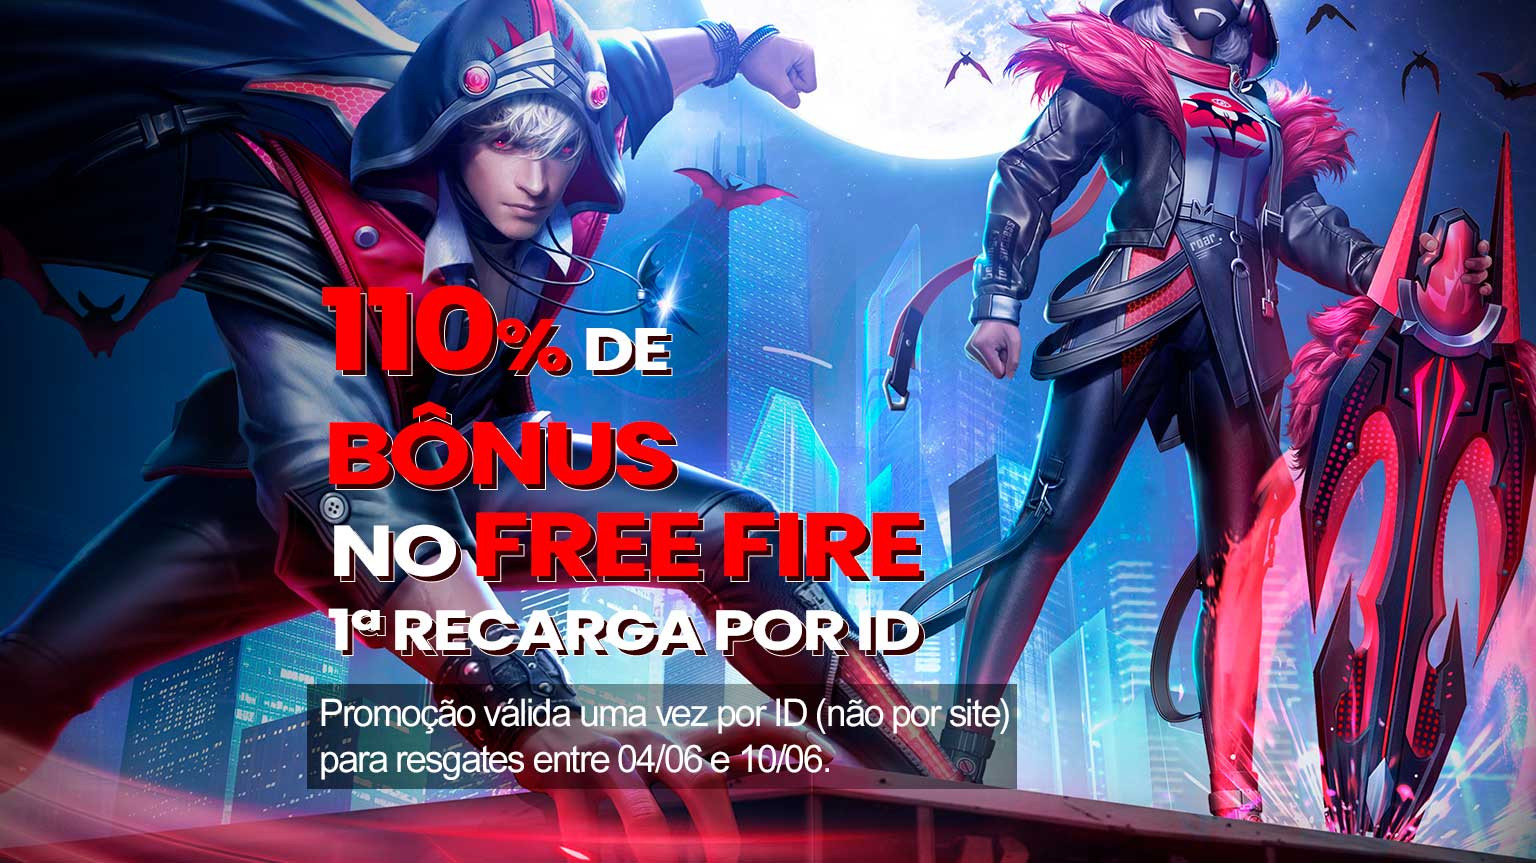 Free Fire: evento de recarga de diamantes dá até 110% de bônus no jogo